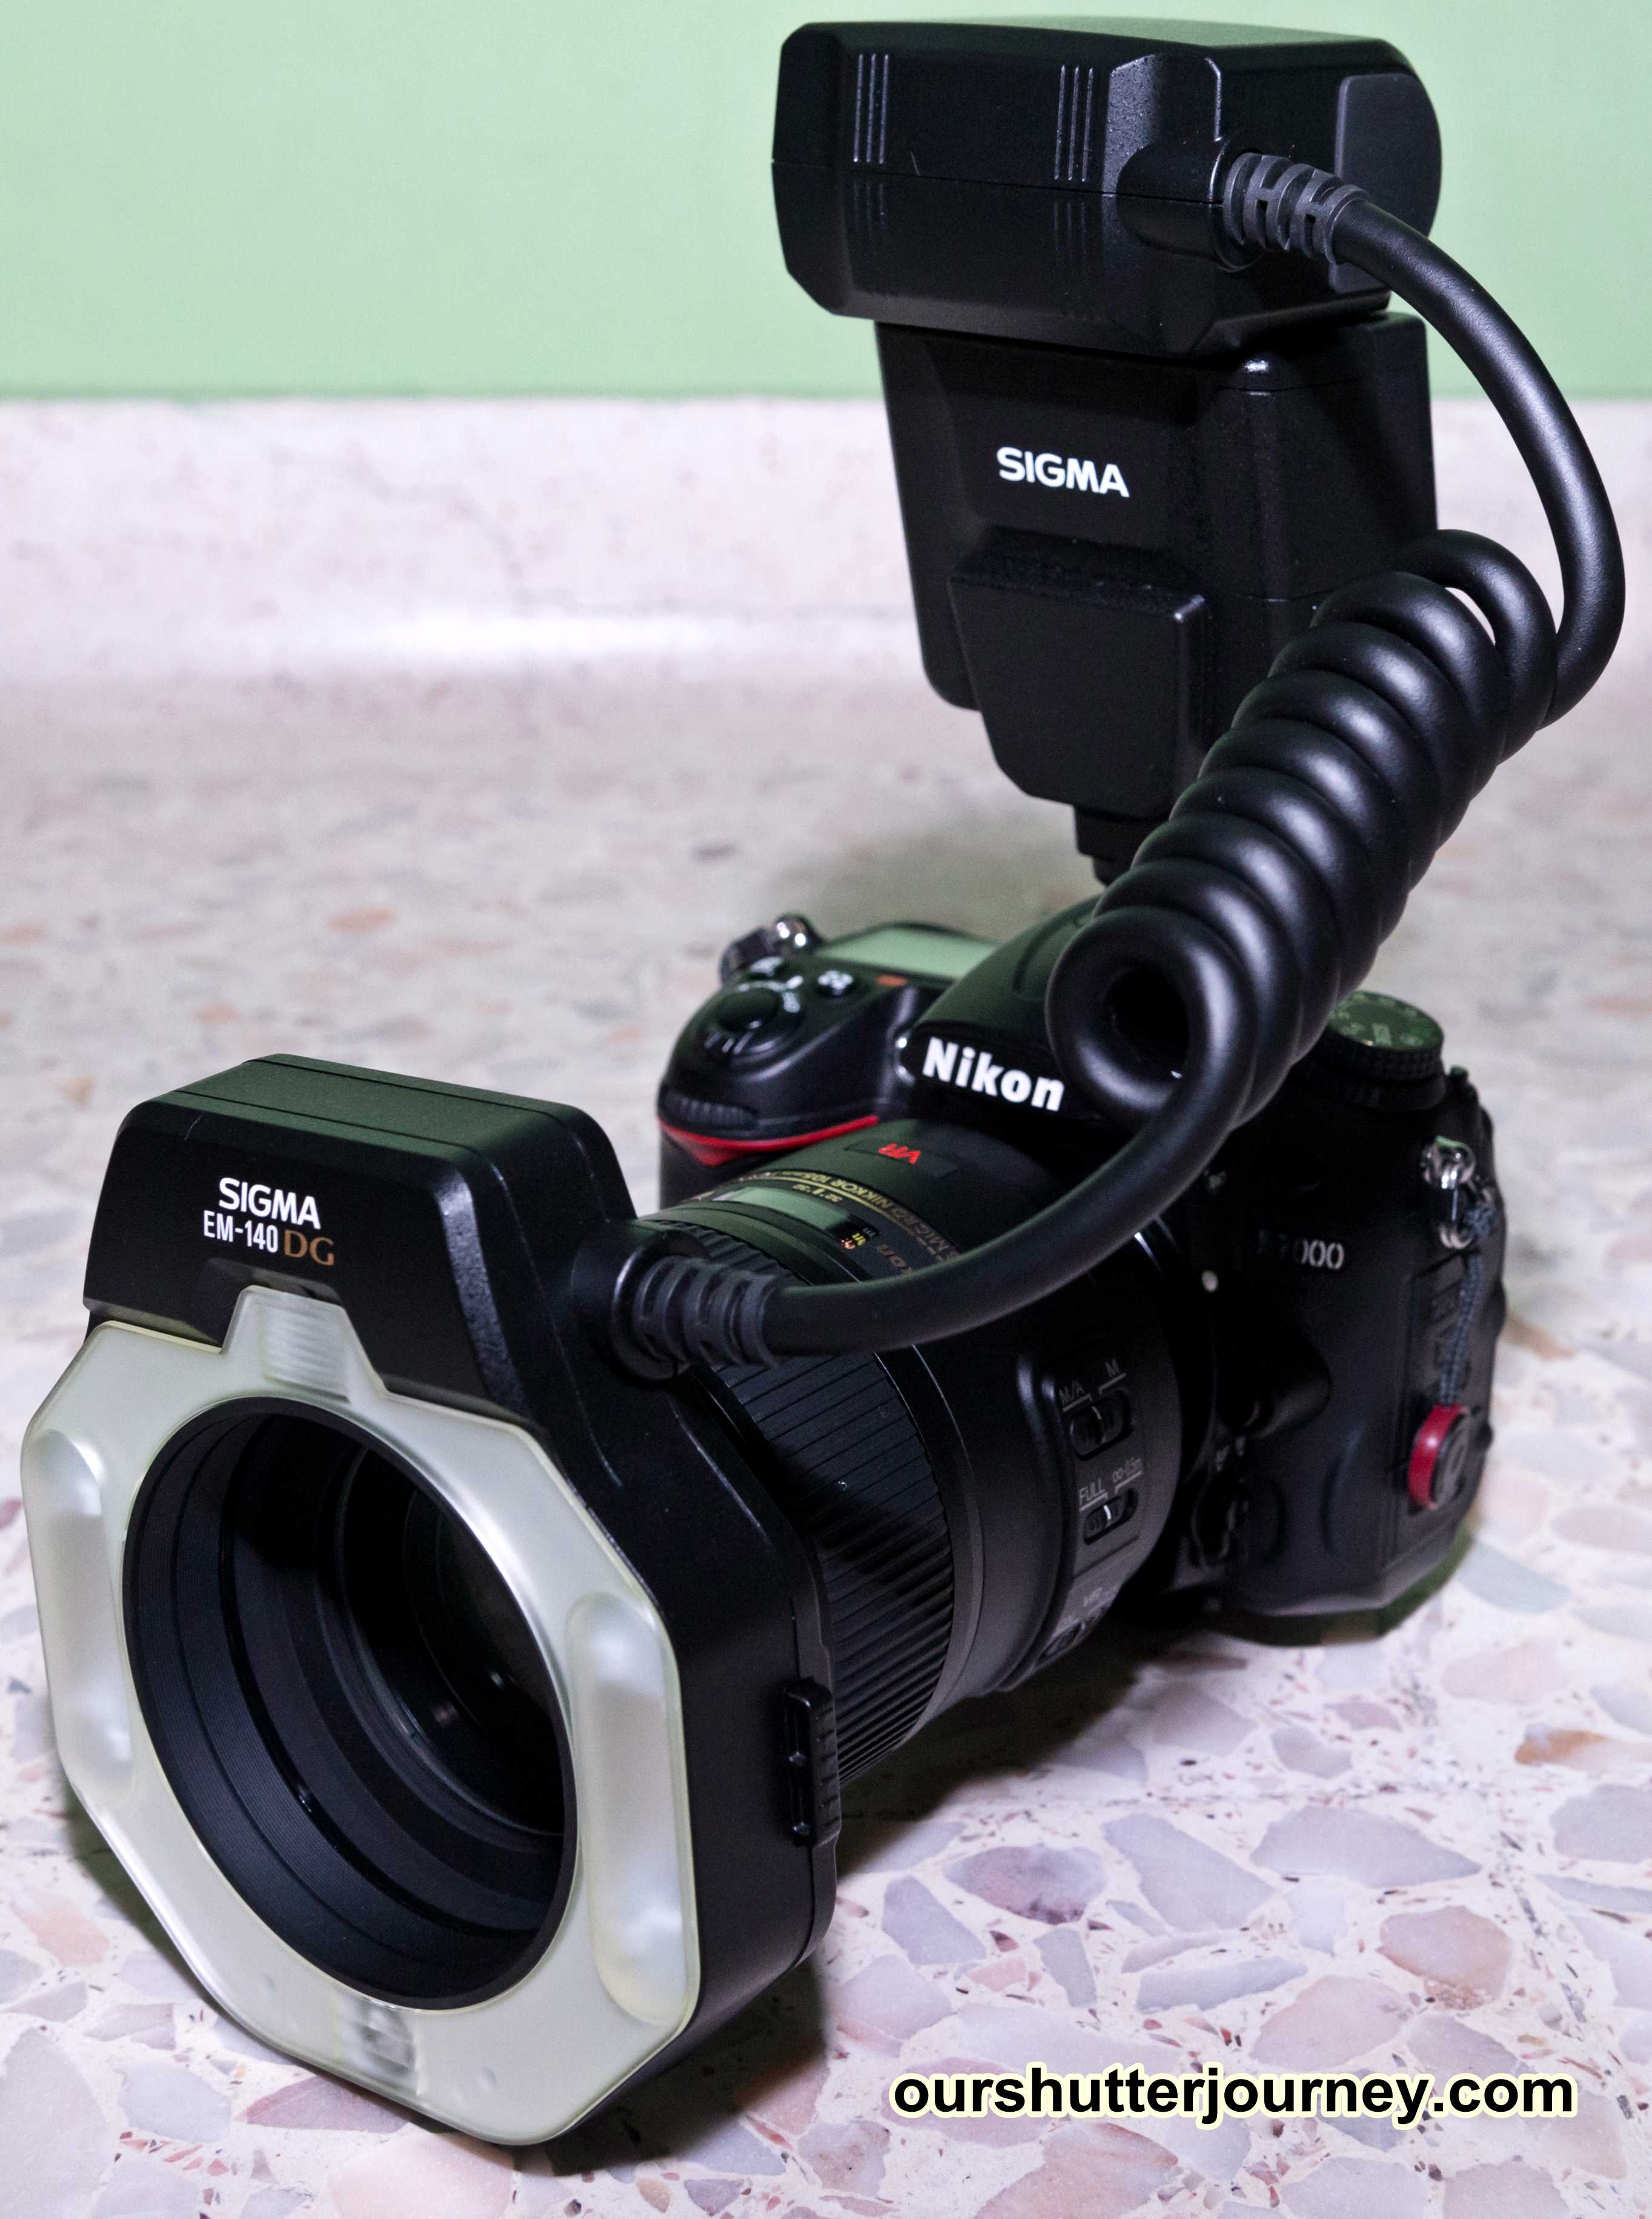 Sigma em 140 dg macro for canon - купить , скидки, цена, отзывы, обзор, характеристики - вспышки для фотоаппаратов